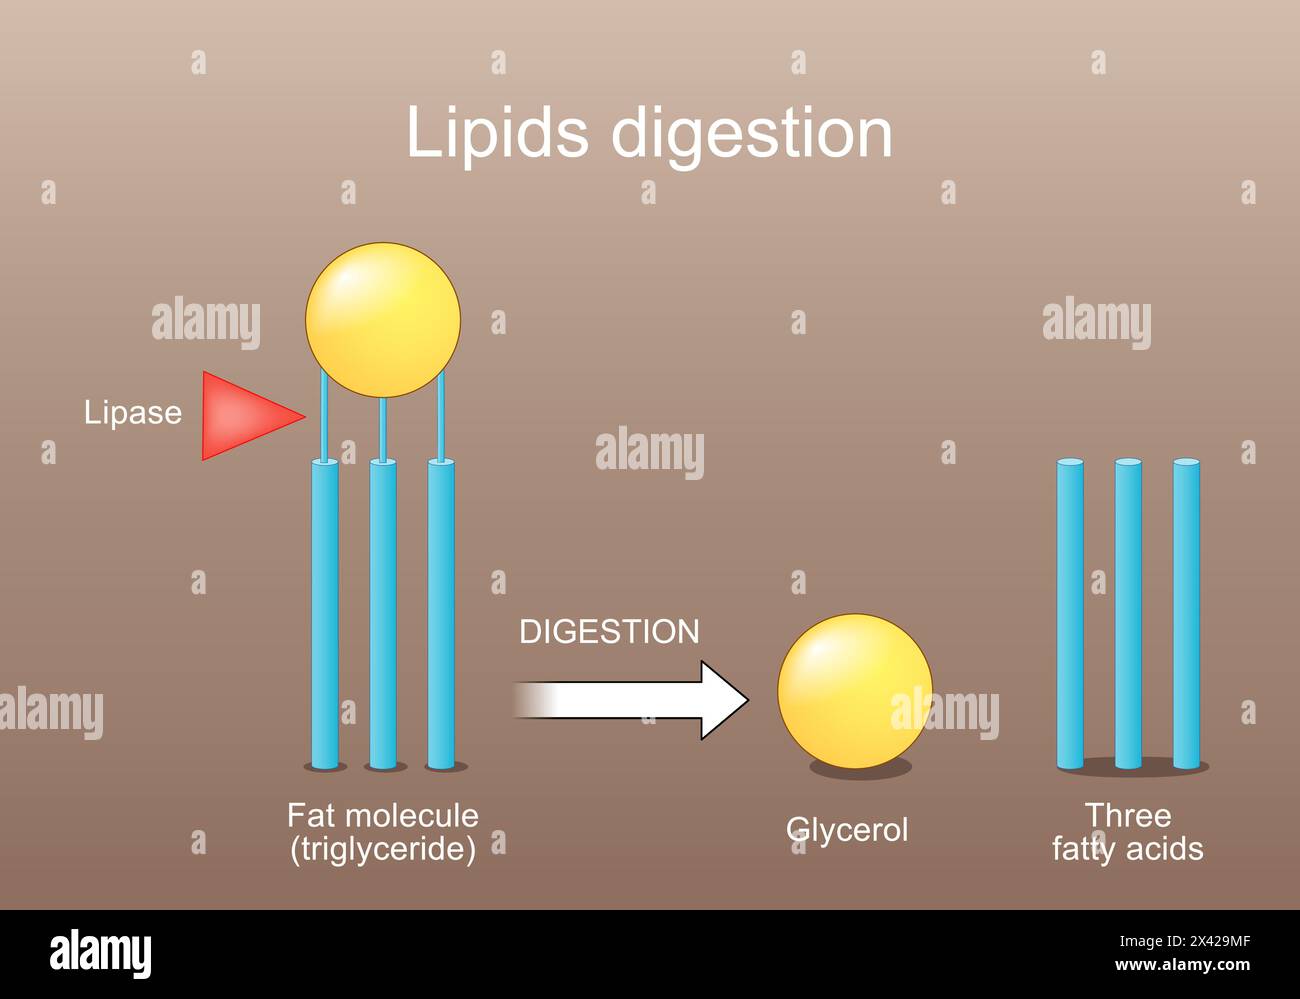 Digestione dei lipidi. Lipolisi. Enzimi lipasi che catalizza l'idrolisi dei grassi. Metabolismo dei lipidi da trigliceridi a tre acidi grassi e glicemia Illustrazione Vettoriale